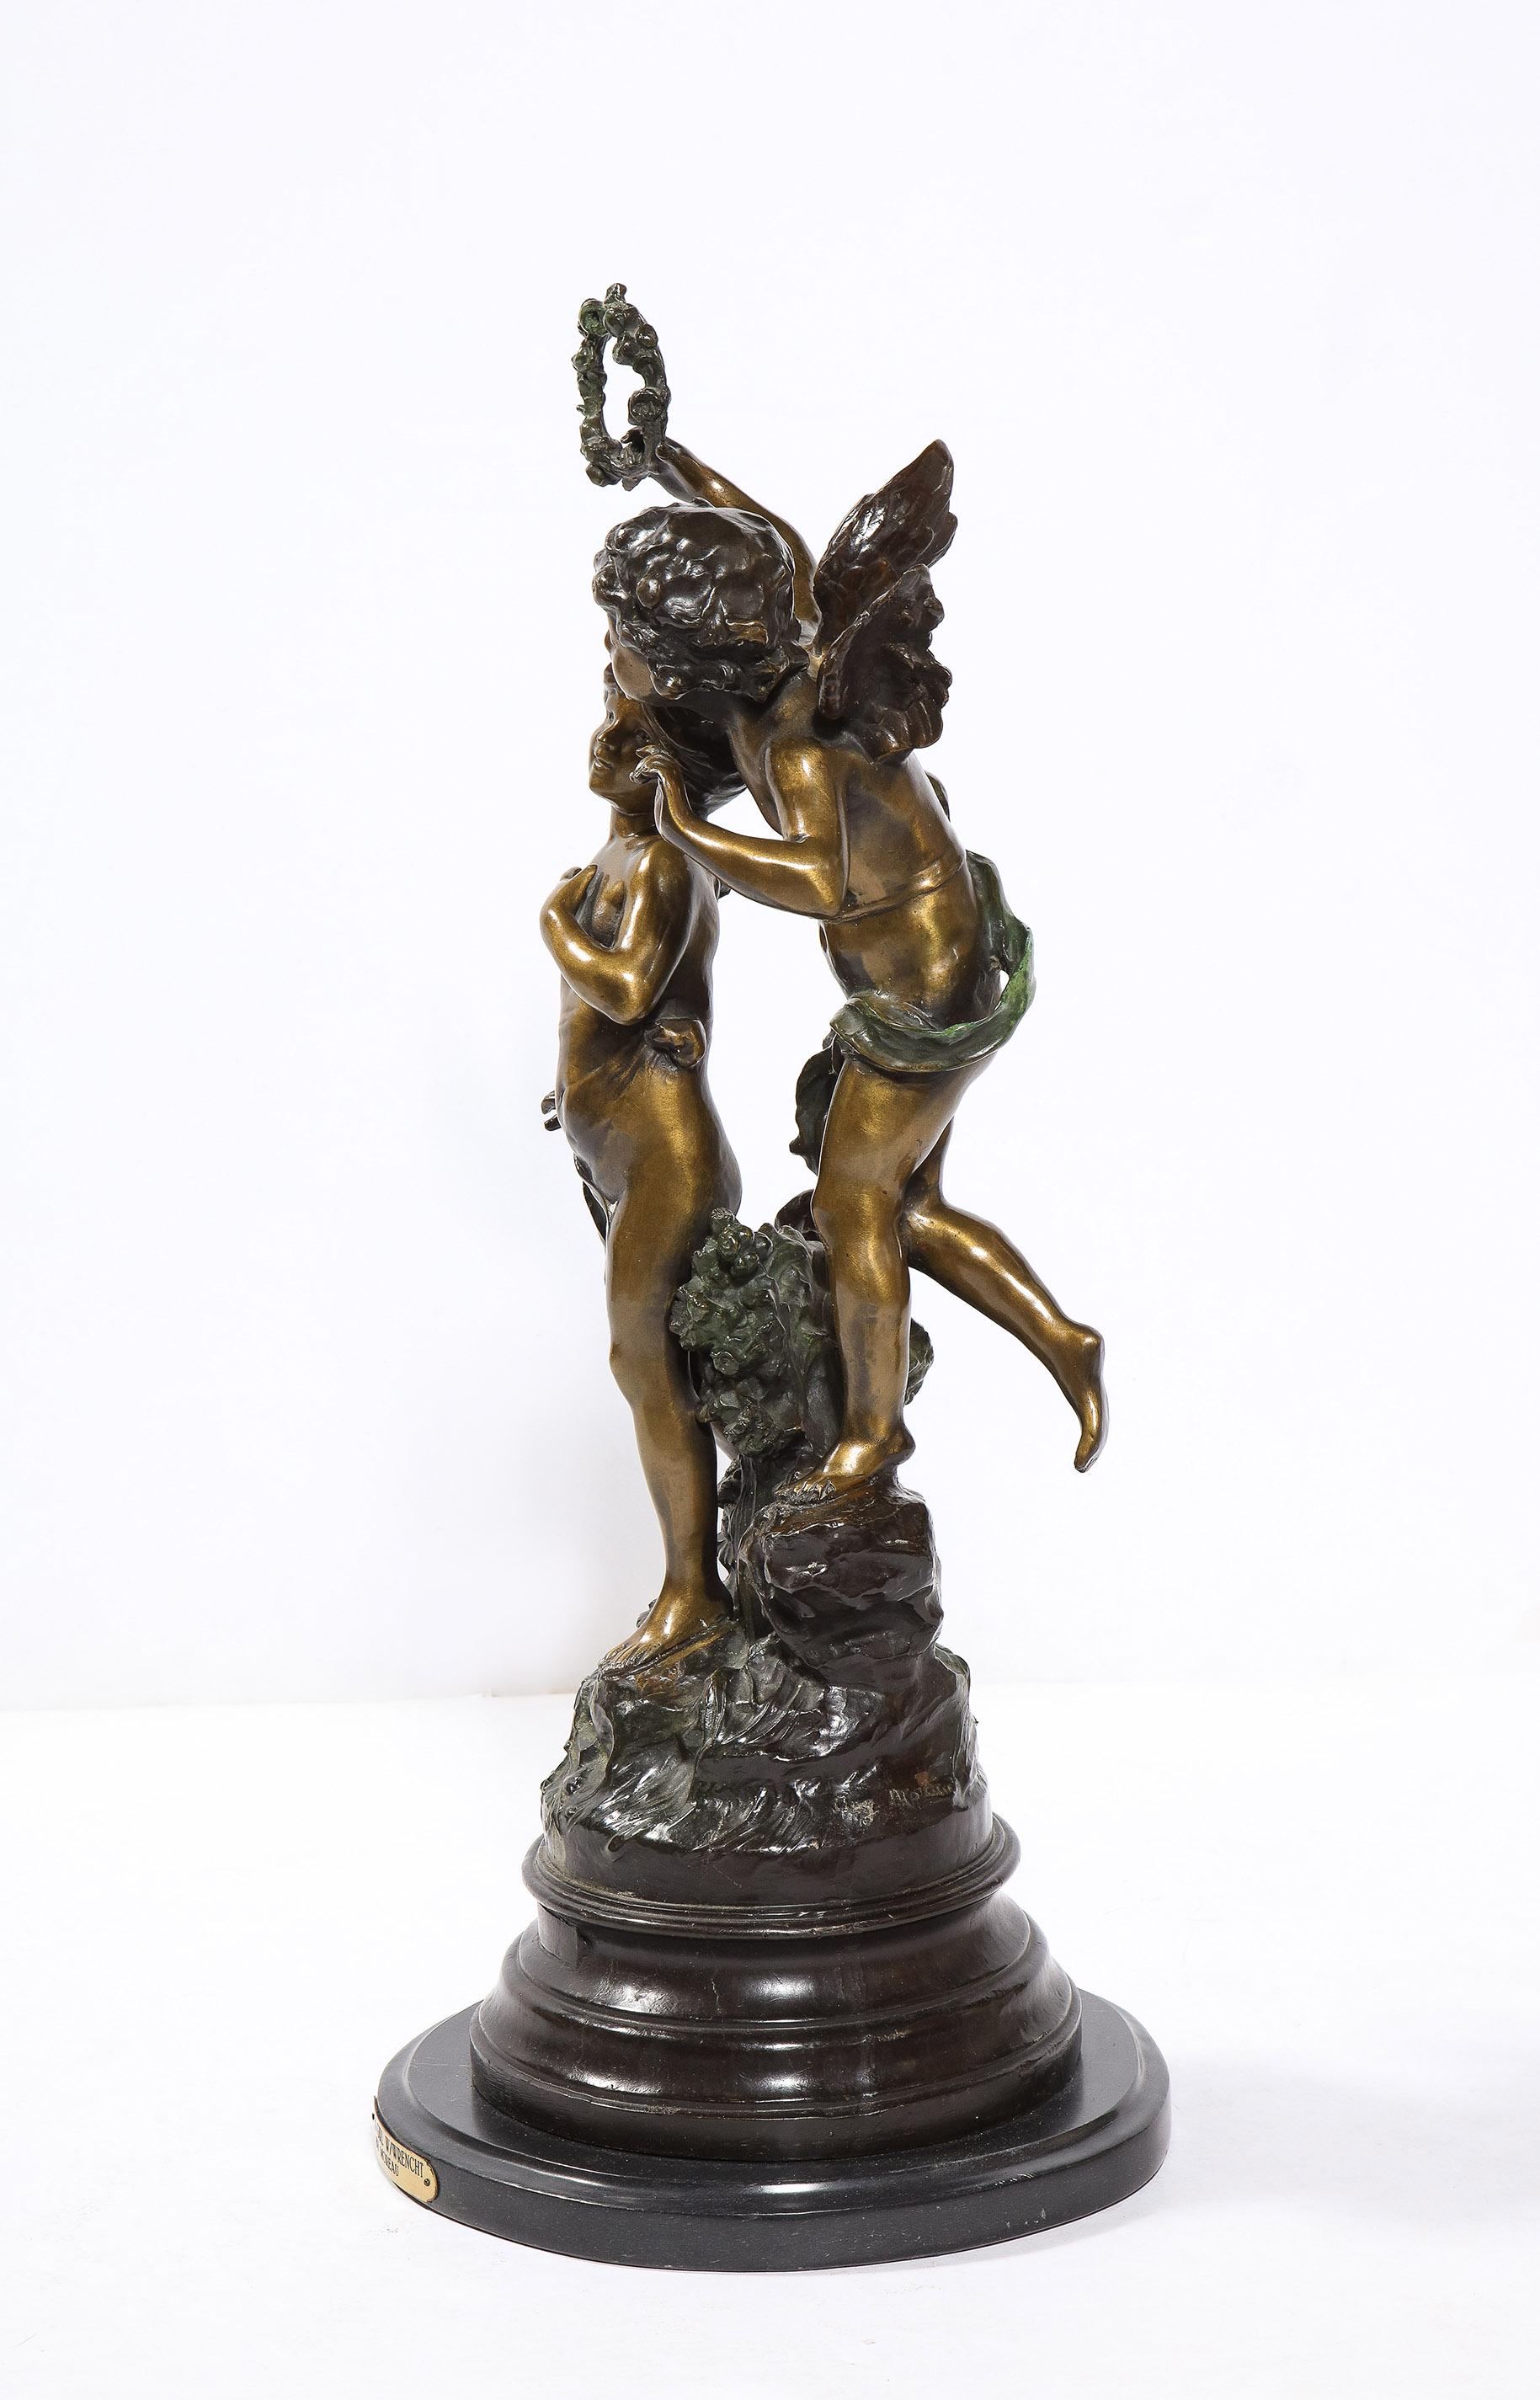 La sculpture en bronze à deux patines d'Auguste Moreau représentant un garçon ailé avec un autre enfant. Posé sur une base en marbre noir à gradins.
Signé AUG. Moreau au casting.